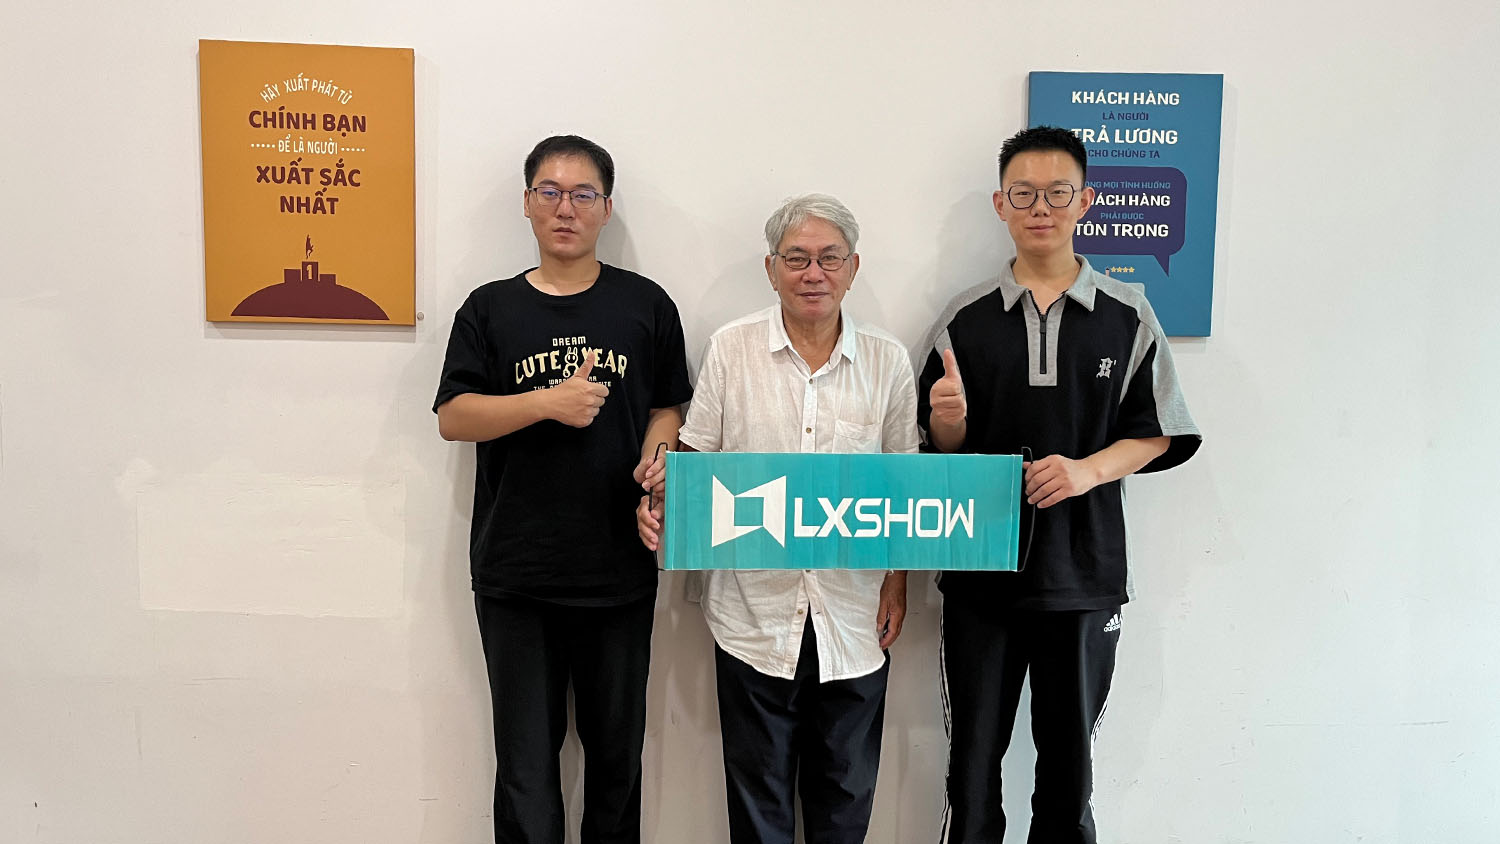 Защо производителят на системи за лазерно рязане LXSHOW посещава клиенти?